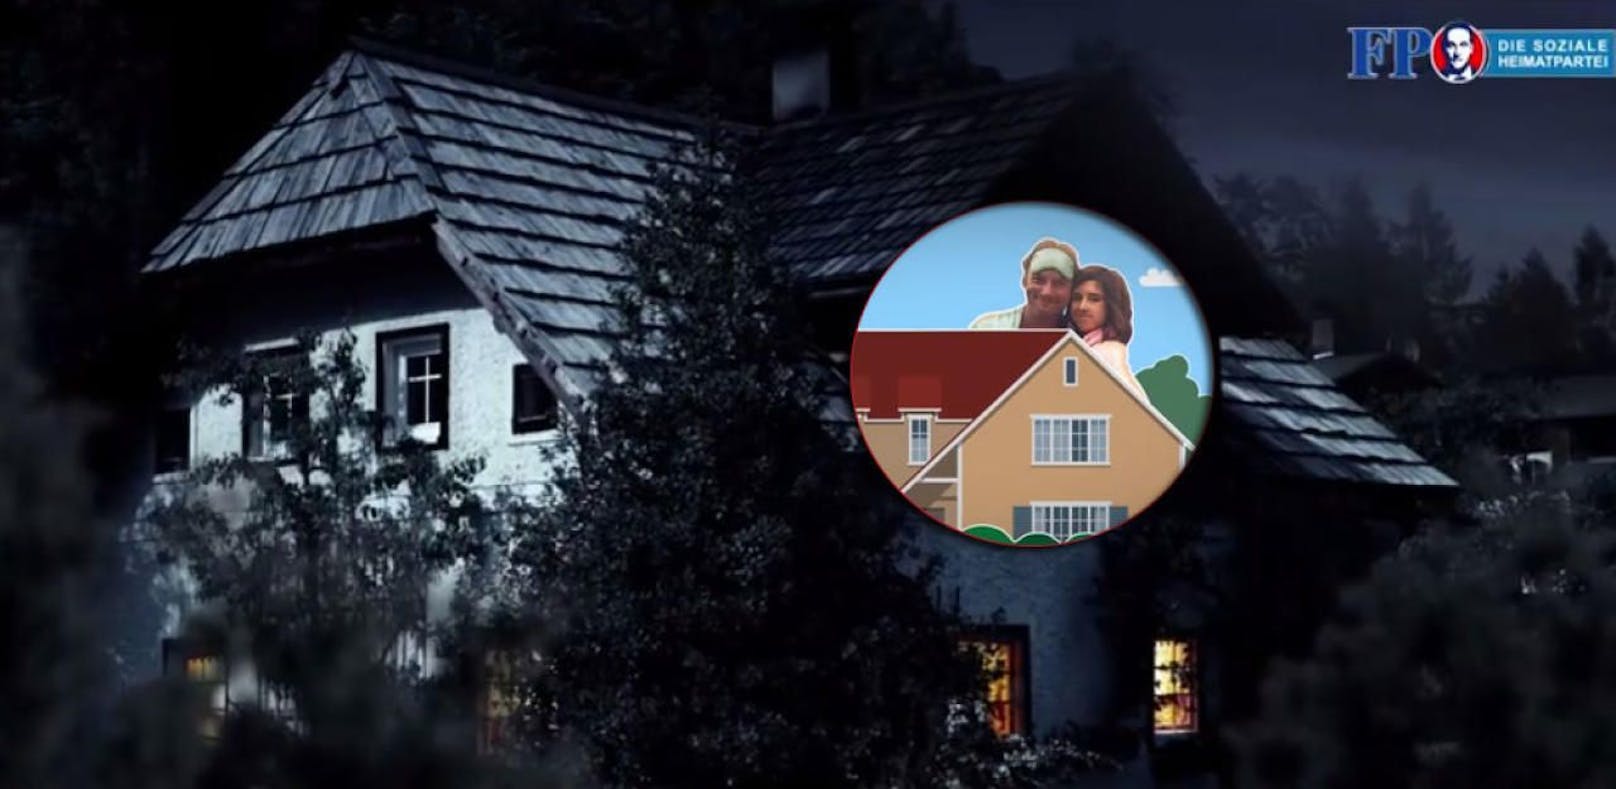 Wut über FPÖ-Clip: Familie erkennt ihr Haus im Video